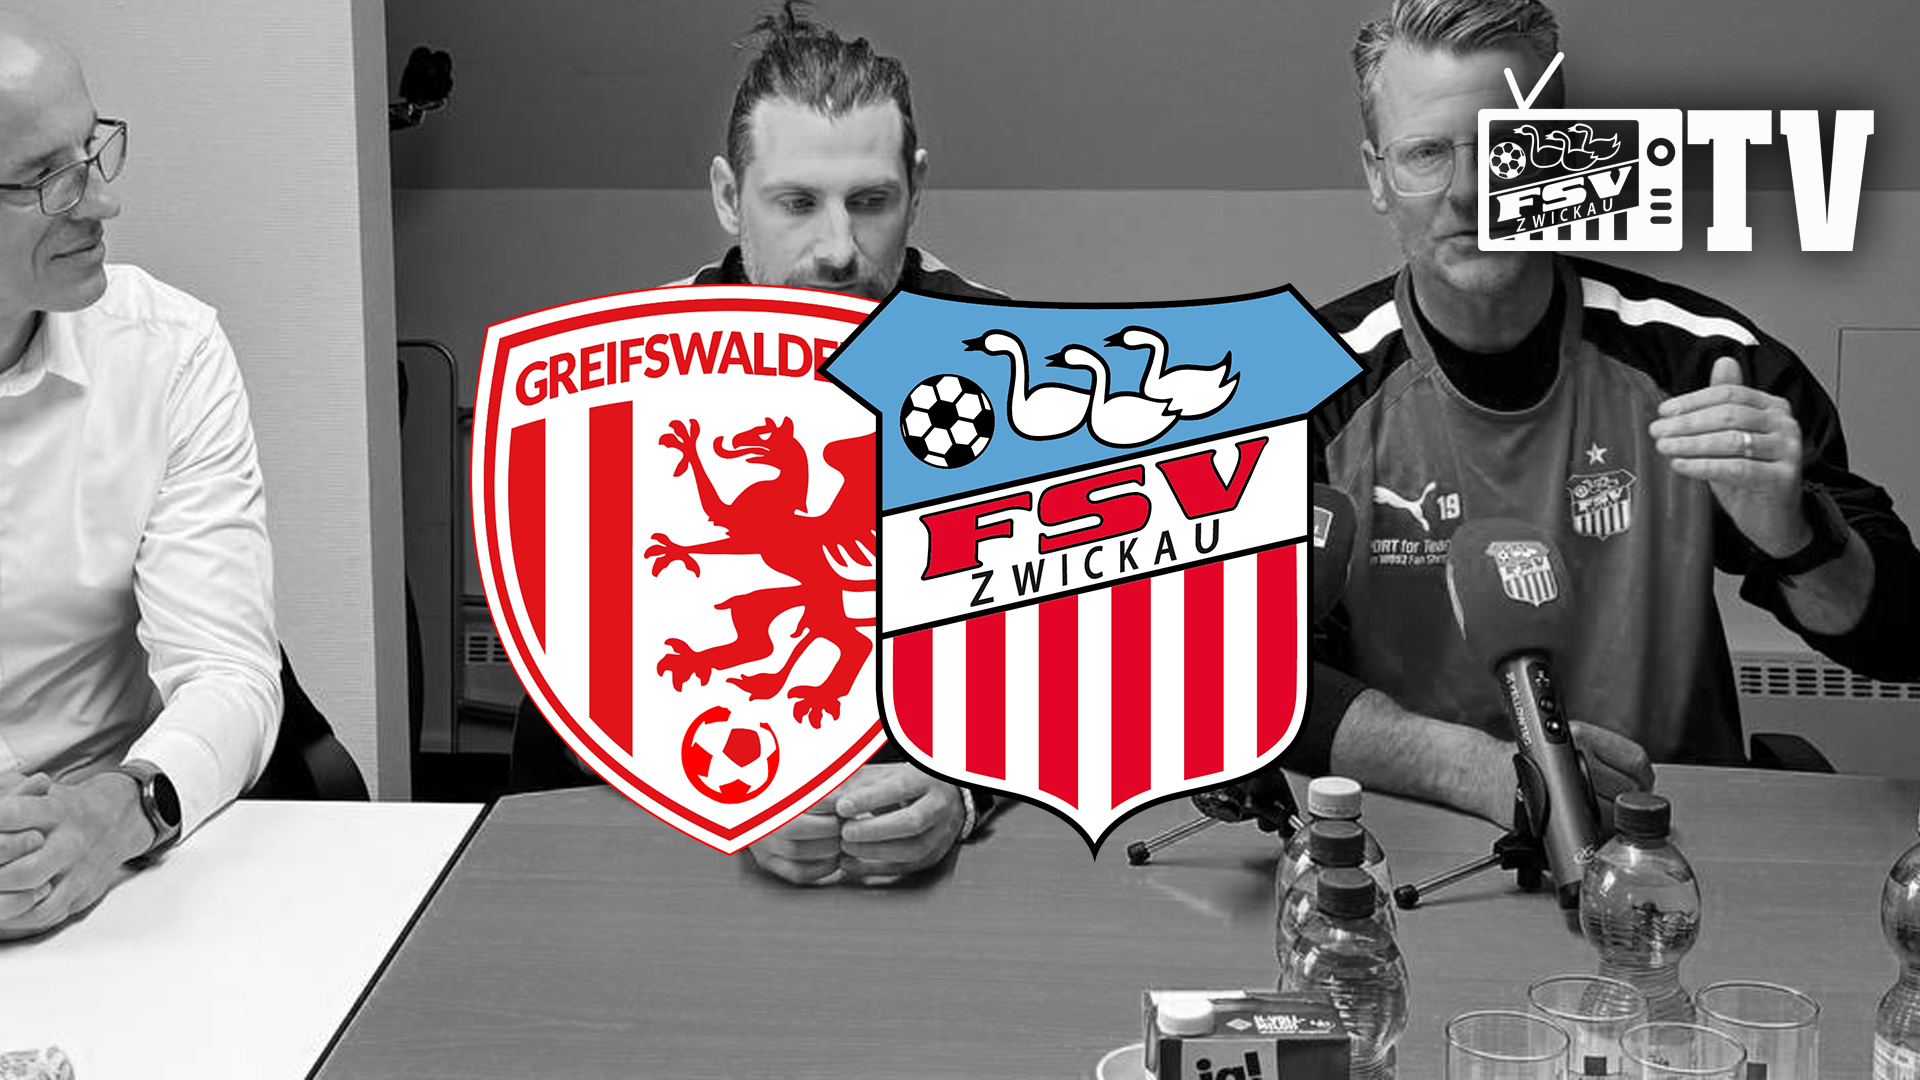 FSV TV | #AUSBLICK auf das Auswärtsspiel beim Greifswalder FC